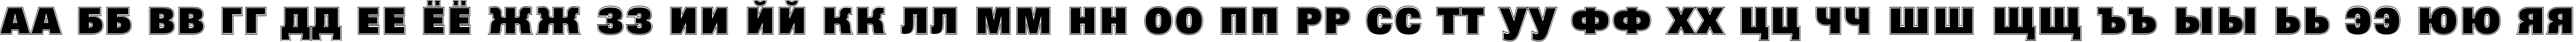 Пример написания русского алфавита шрифтом a_GroticTitulGrHv